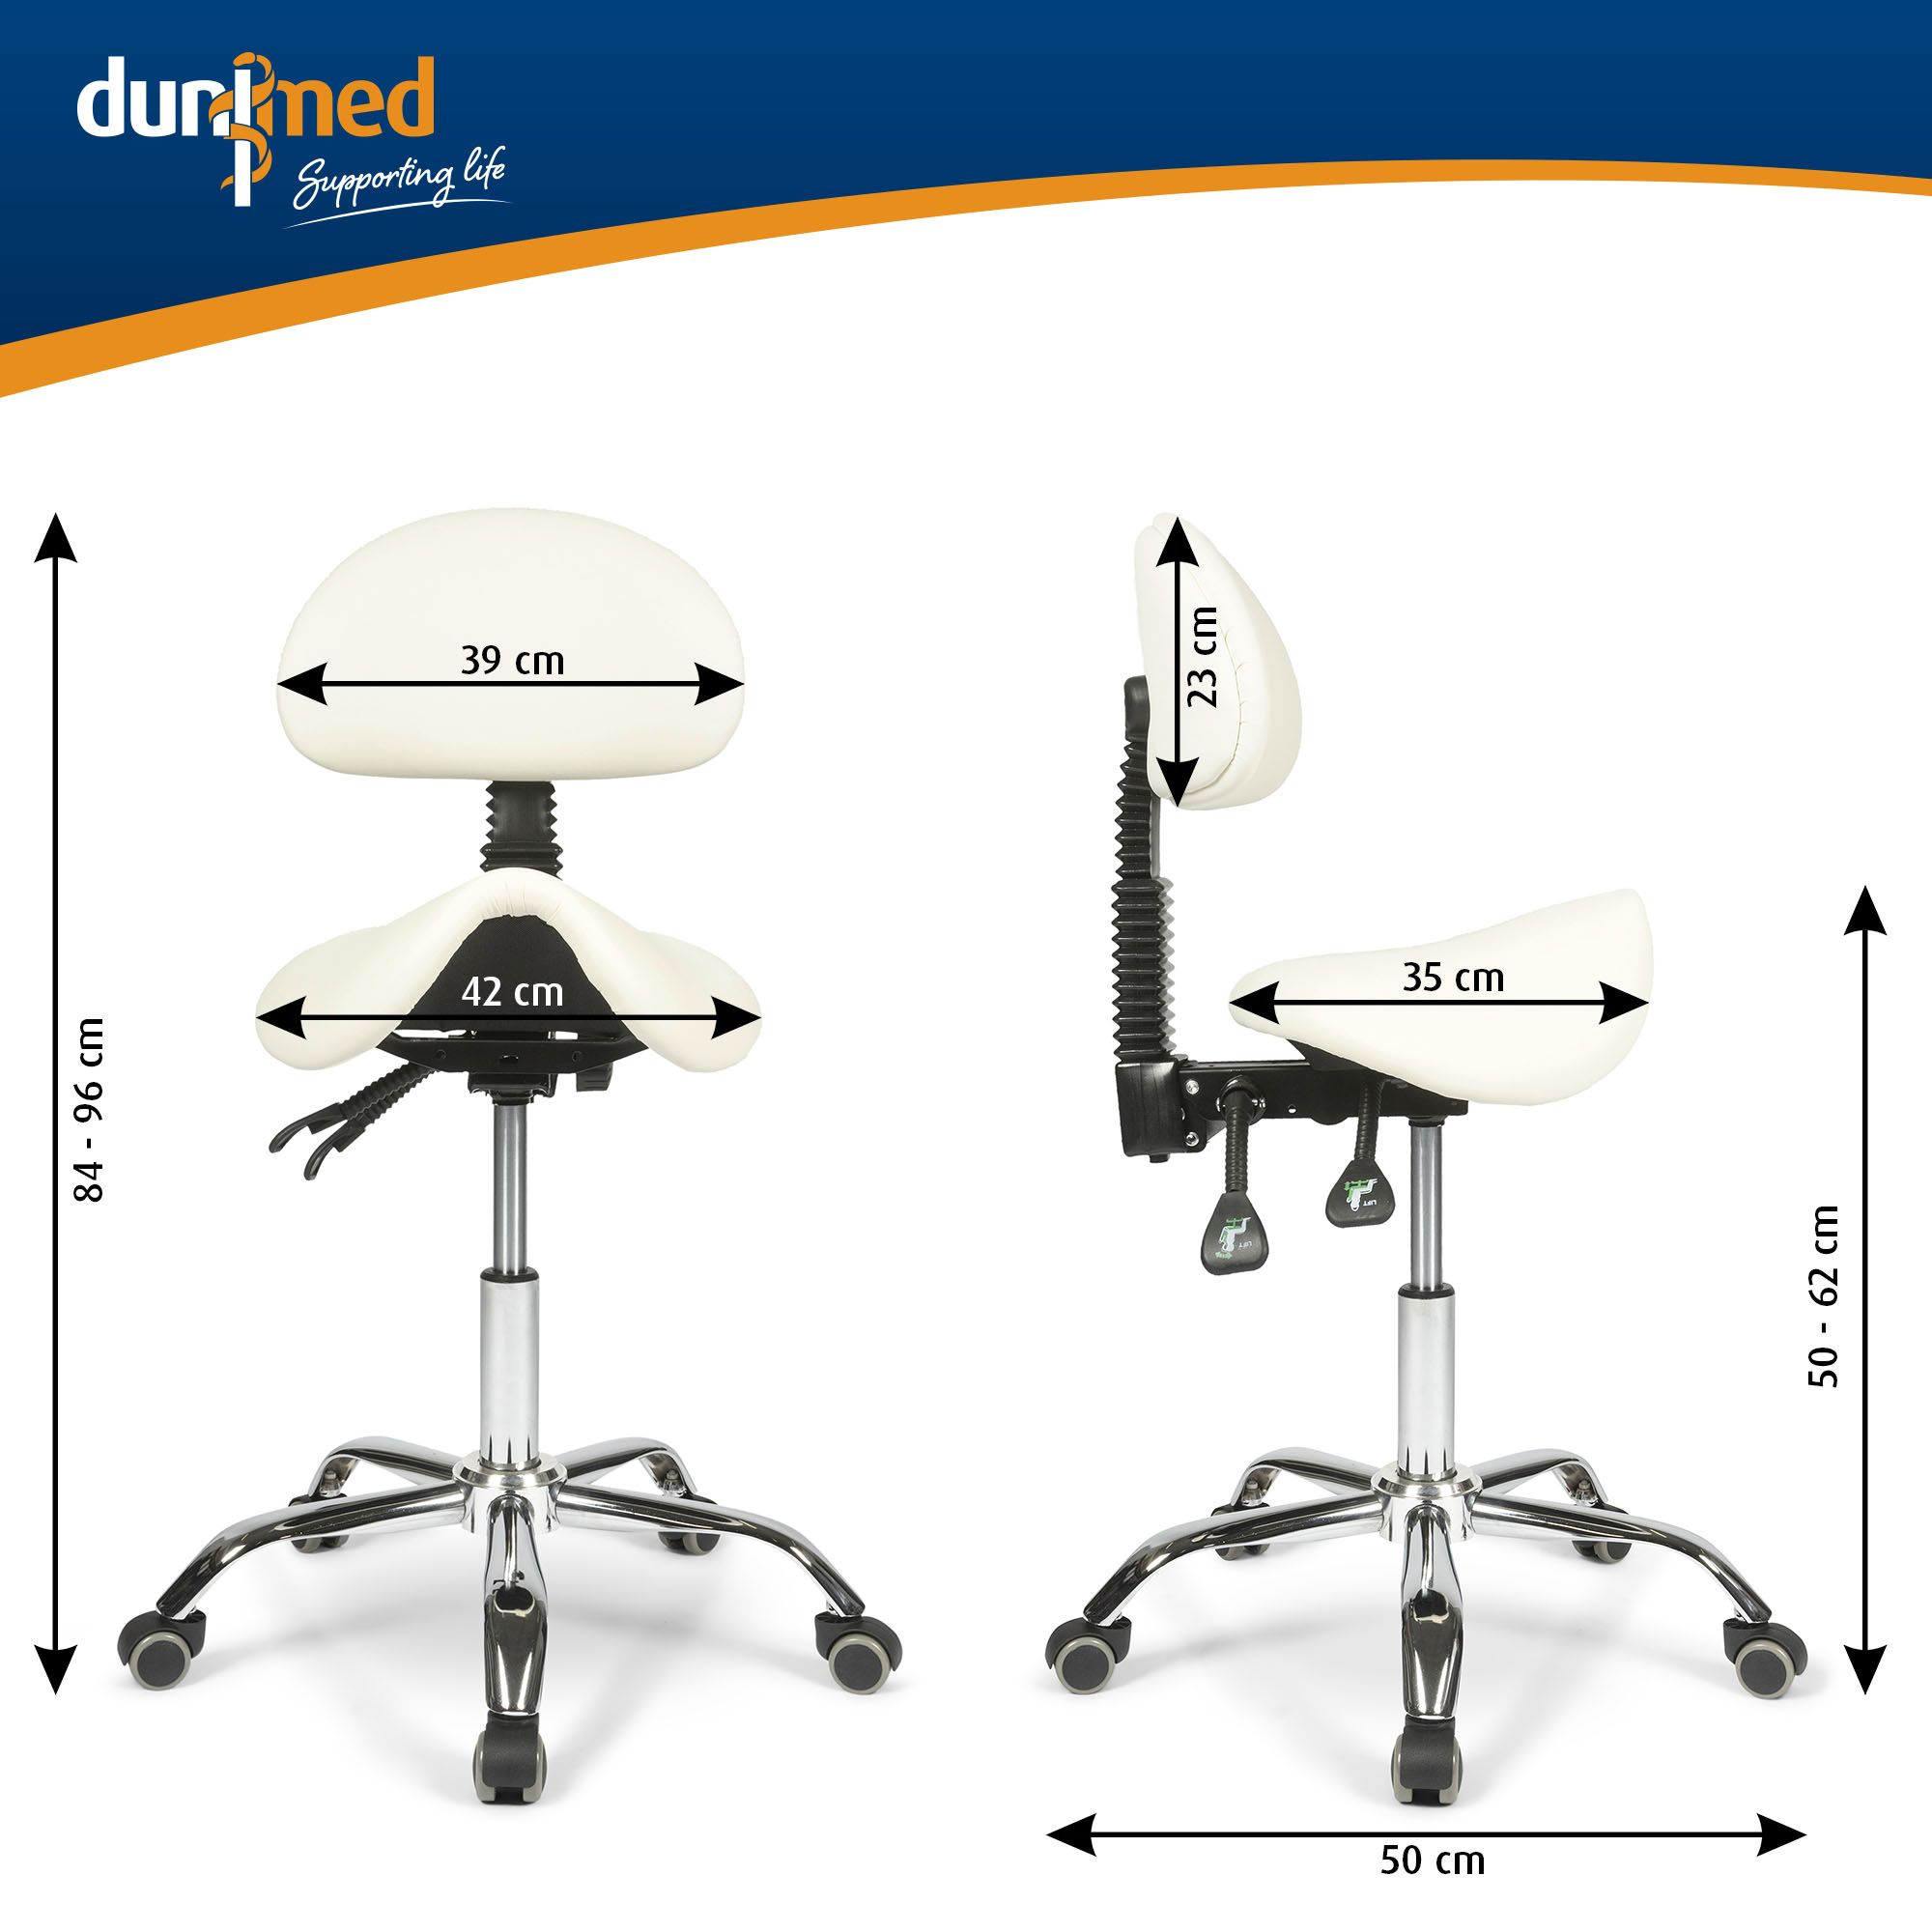 dunimed ergonomic saddle stool with backrest white size chart